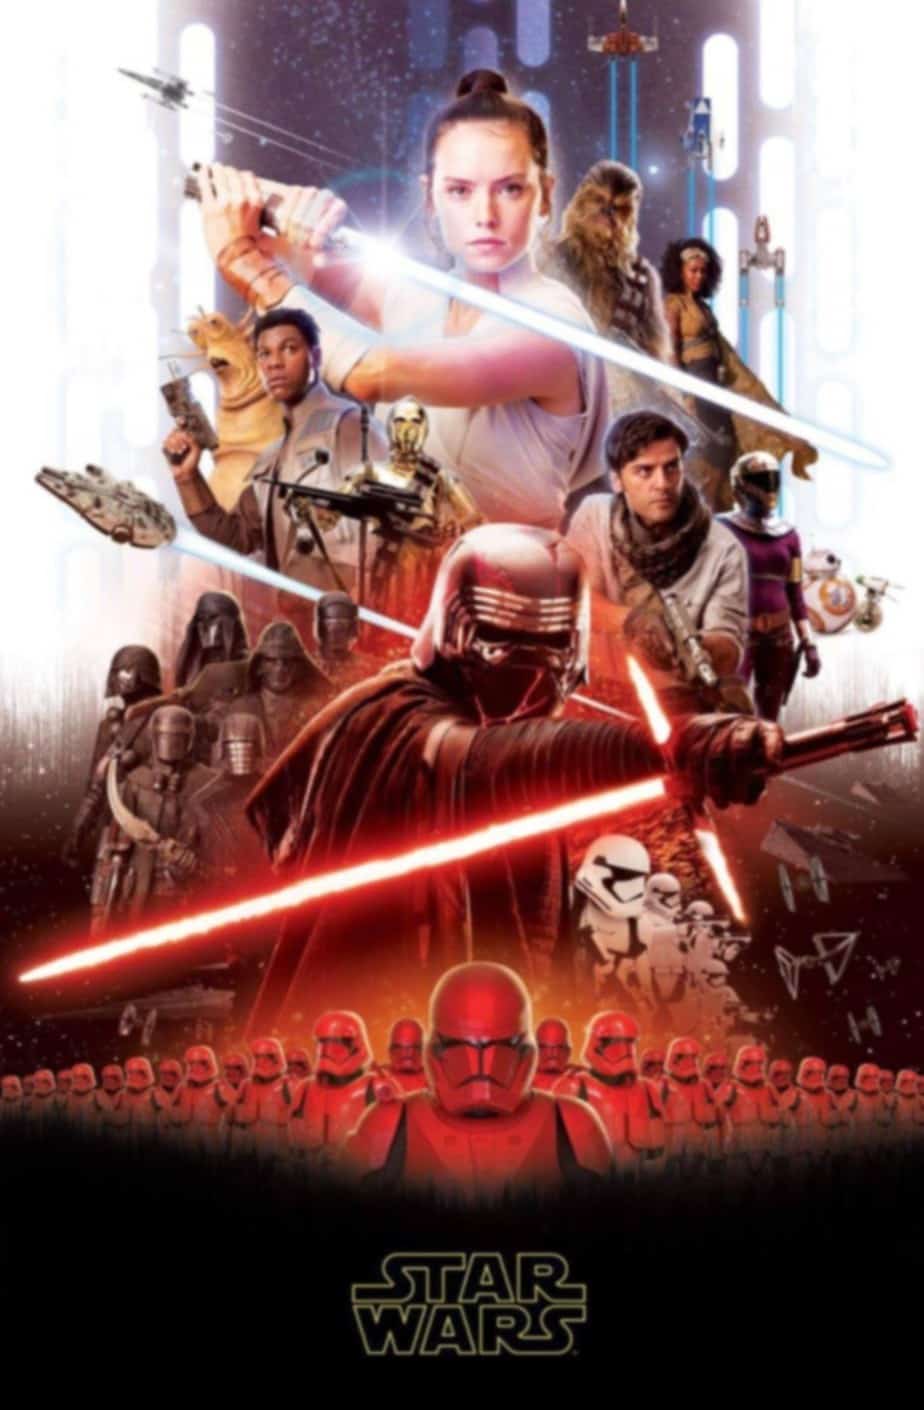 Procurio prvi poster za Star Wars IX